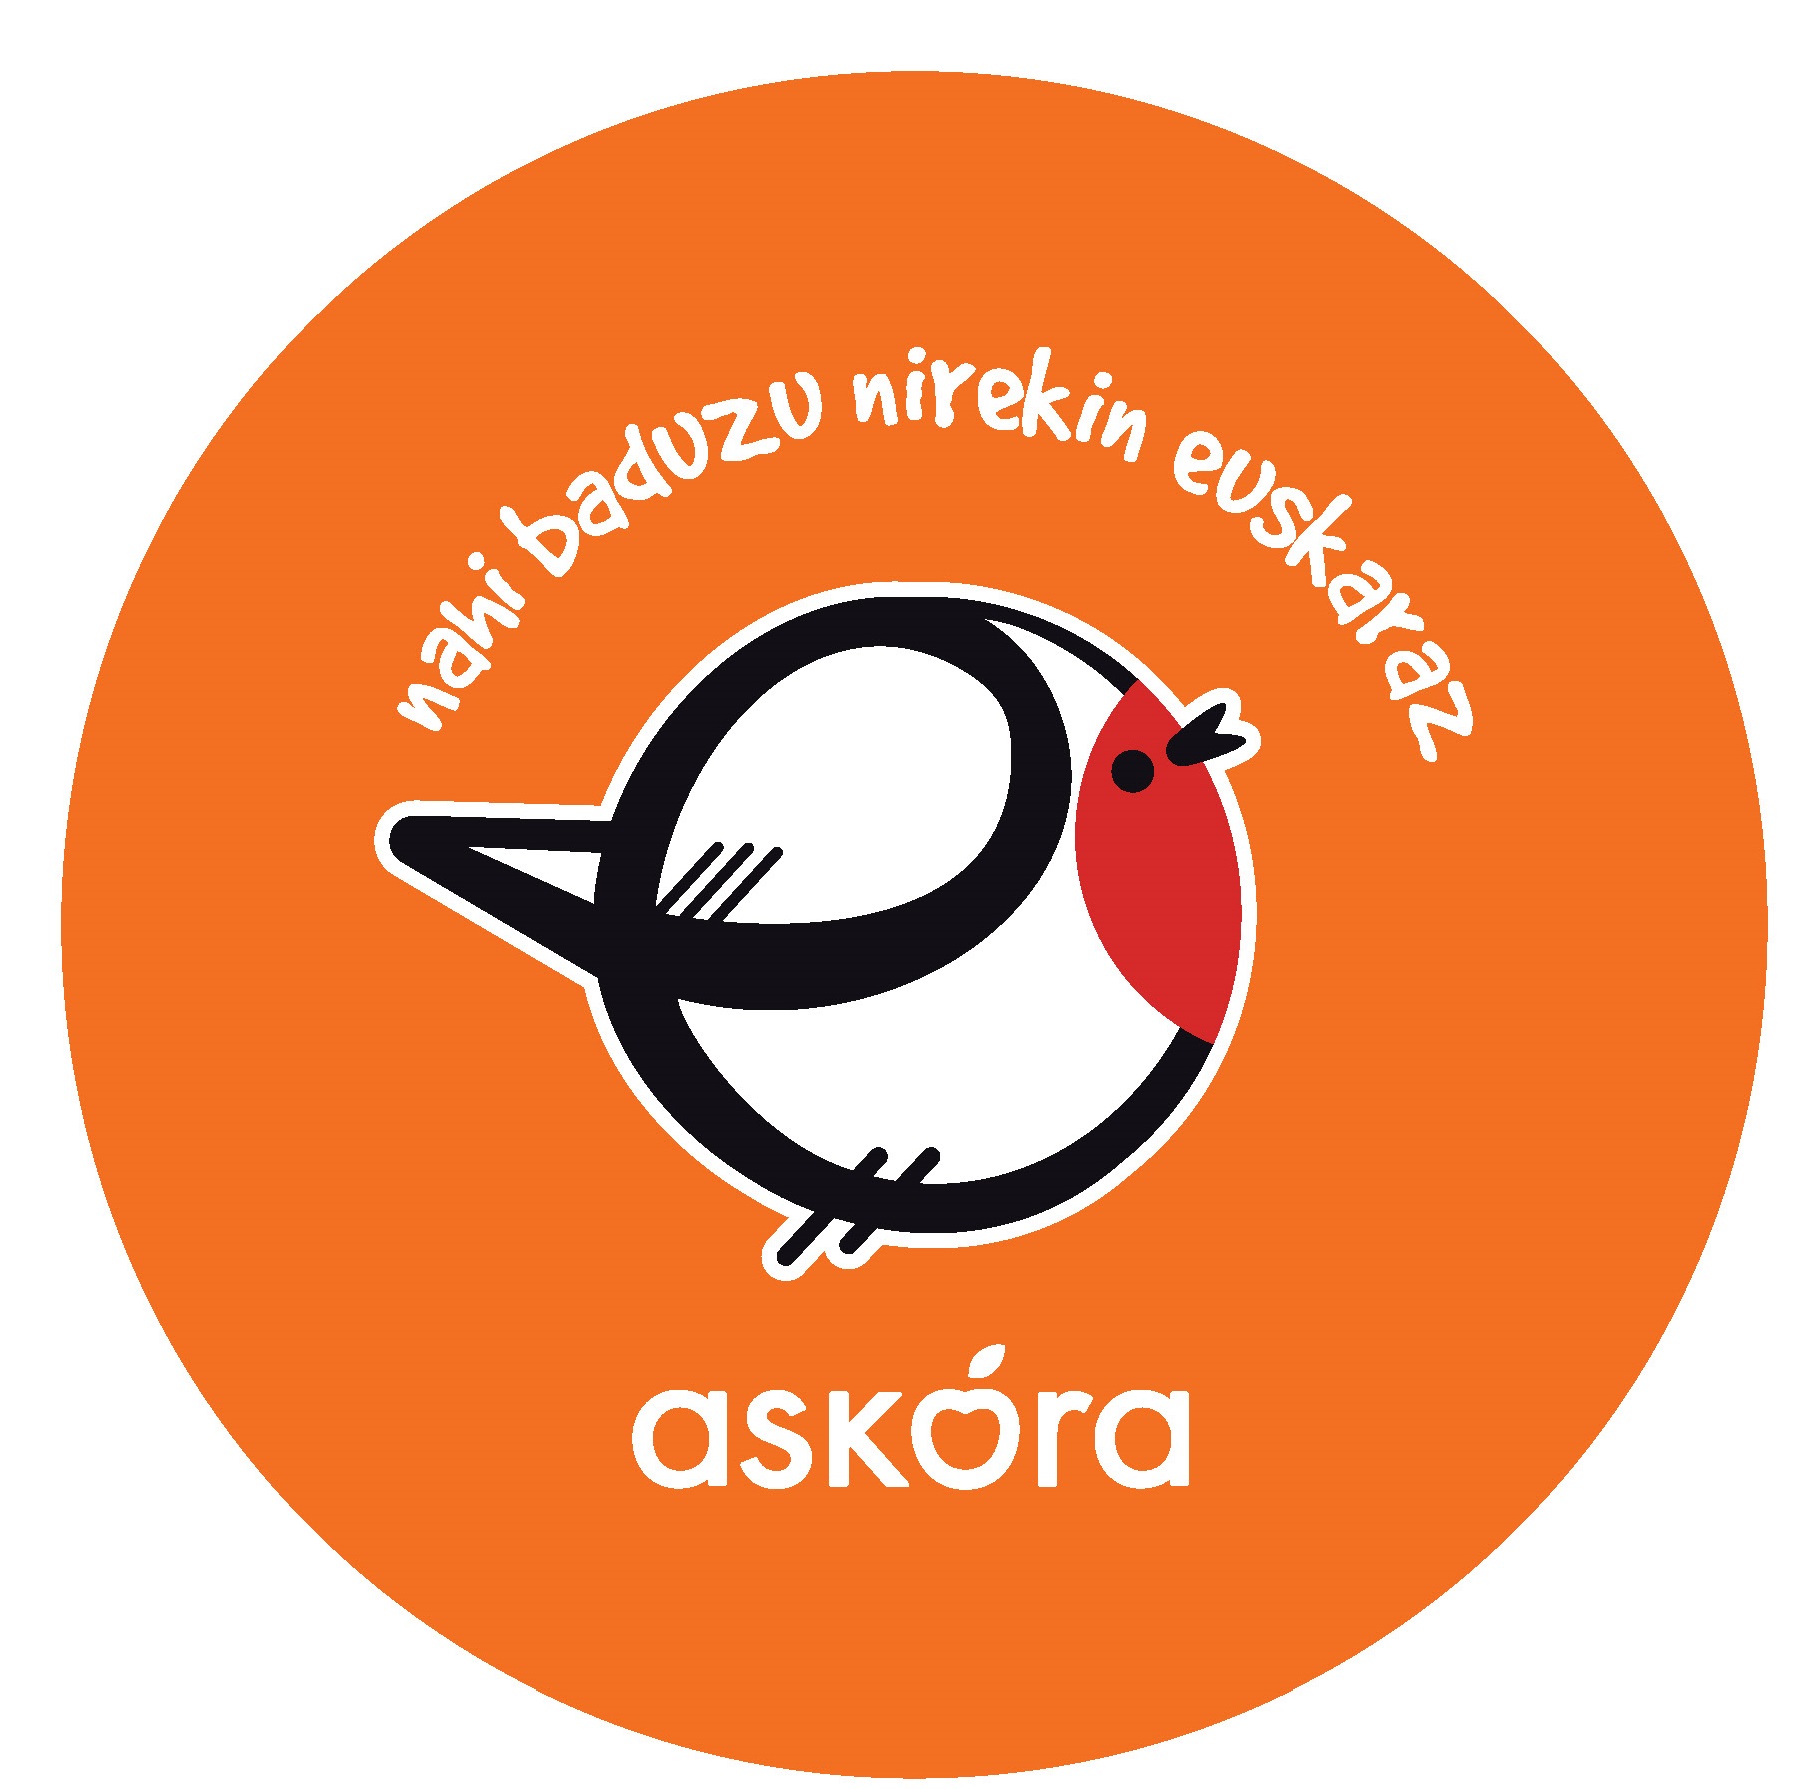 En los servicios prestados por ASKORA, le damos alas al Euskera